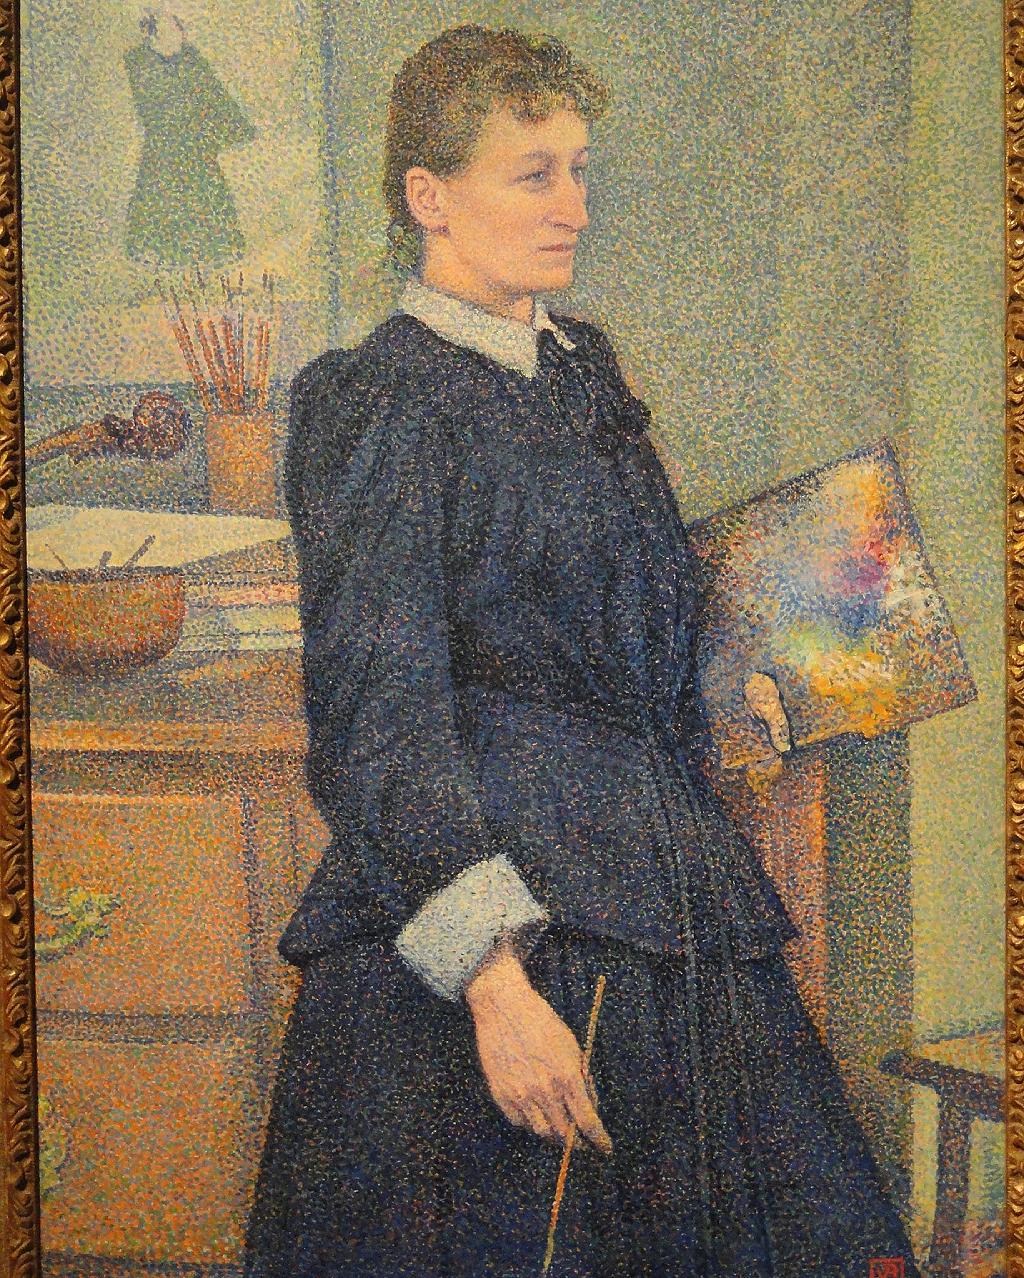 Anna Boch, c. 1889, pintada por Théo van Rysselberghe.